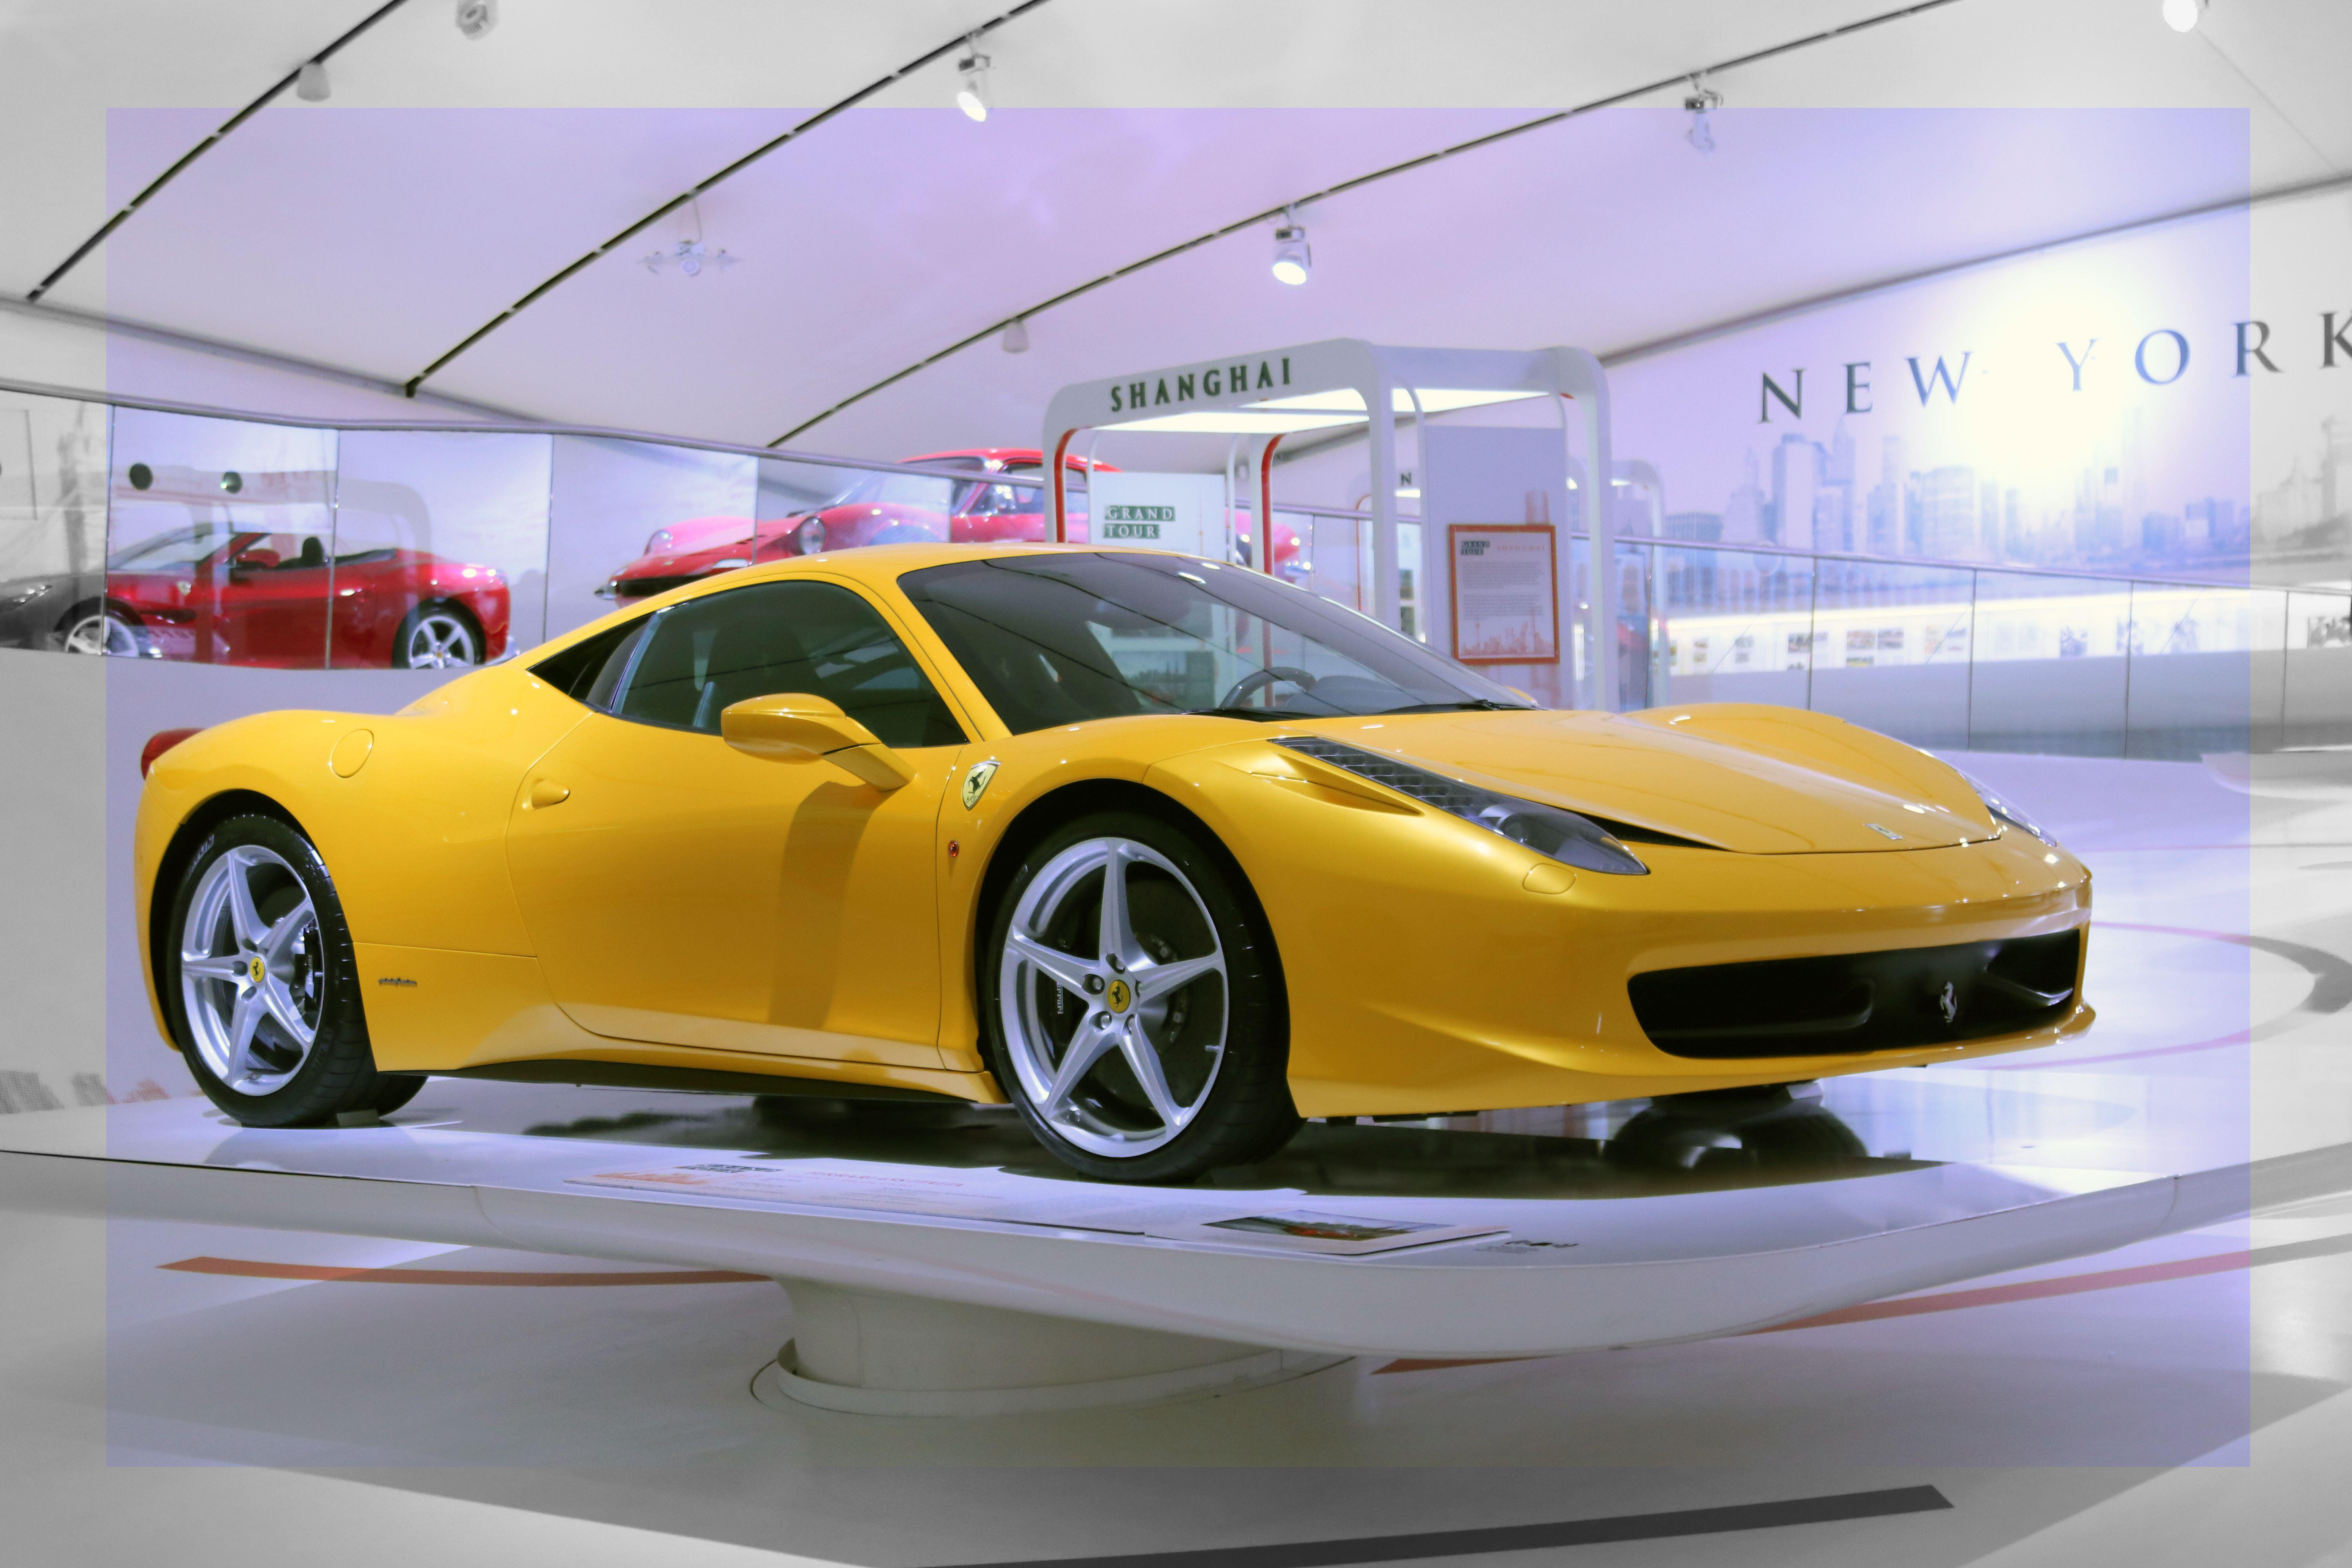 Das teuerste Auto, das O'Sullivan besaß, war ein Ferrari 458 im Wert von 183.000 Pfund